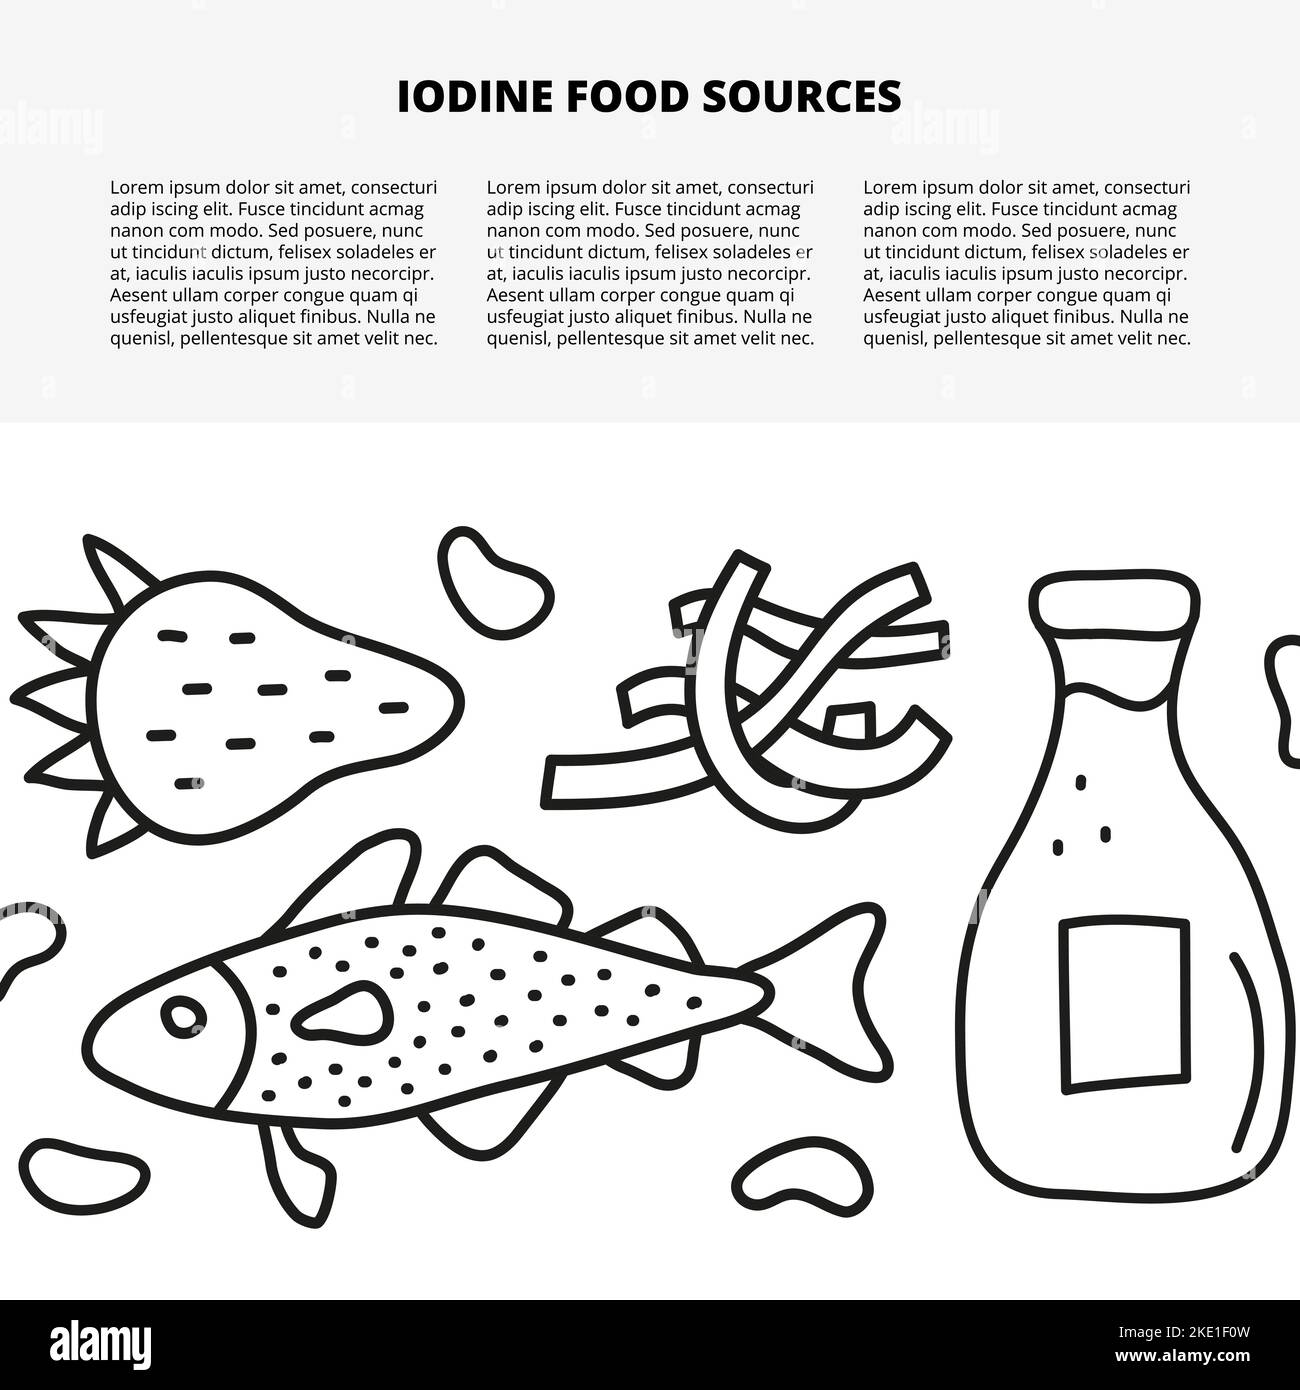 Modello di articolo con spazio per il testo e gli scarabei delineare fonti di cibo iodio tra cui pesce di merluzzo, latte, alghe, fragole, fagioli isolati su bianco bac Illustrazione Vettoriale